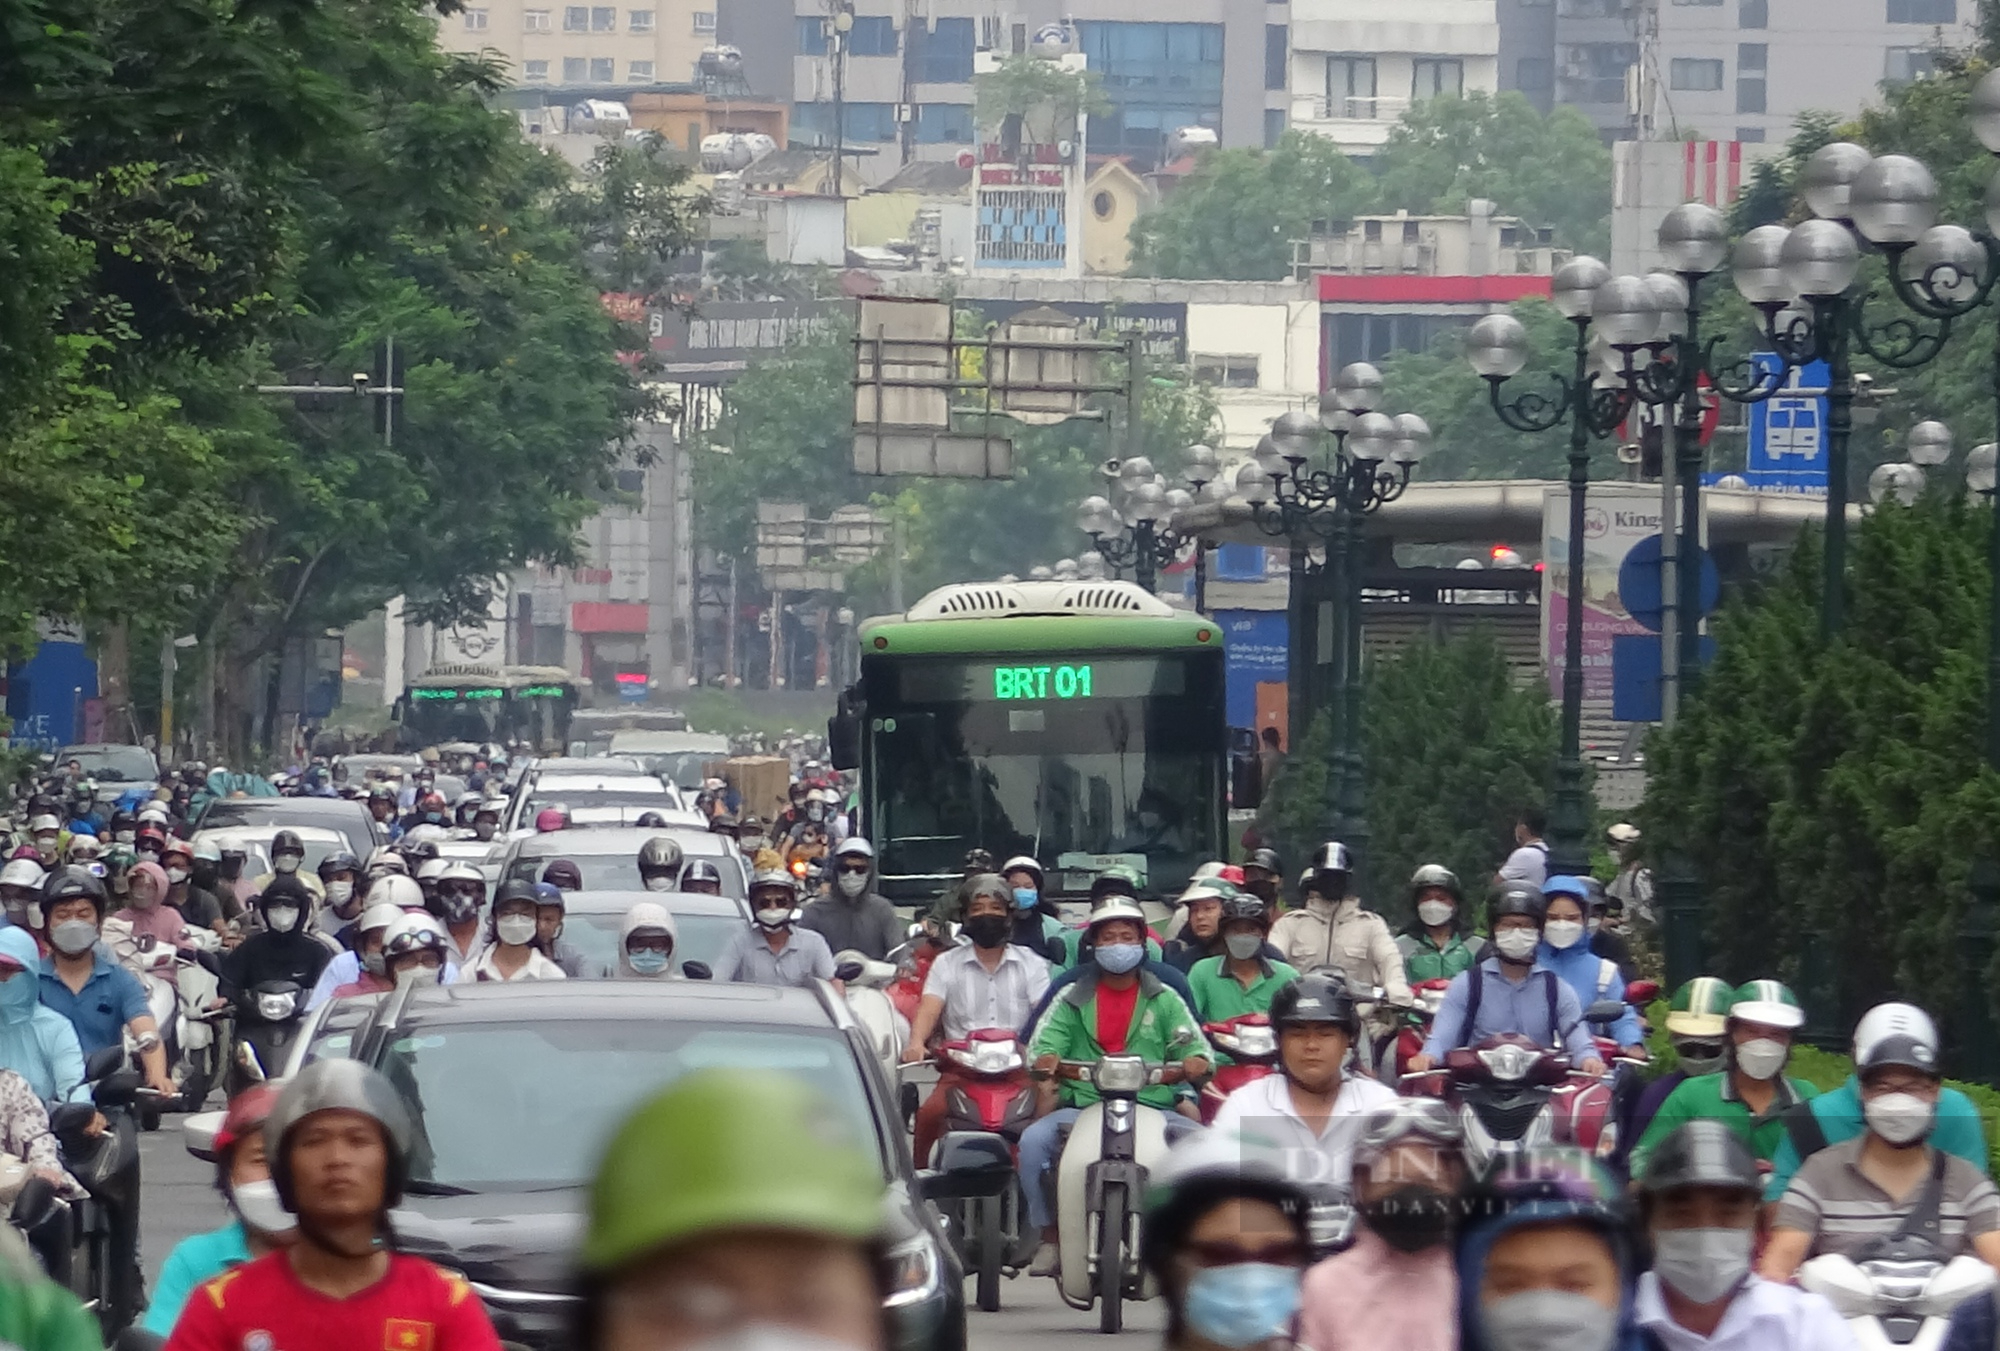 Hà Nội: Ngán ngẩm cảnh chung đường với xe buýt nhanh BRT - Ảnh 2.